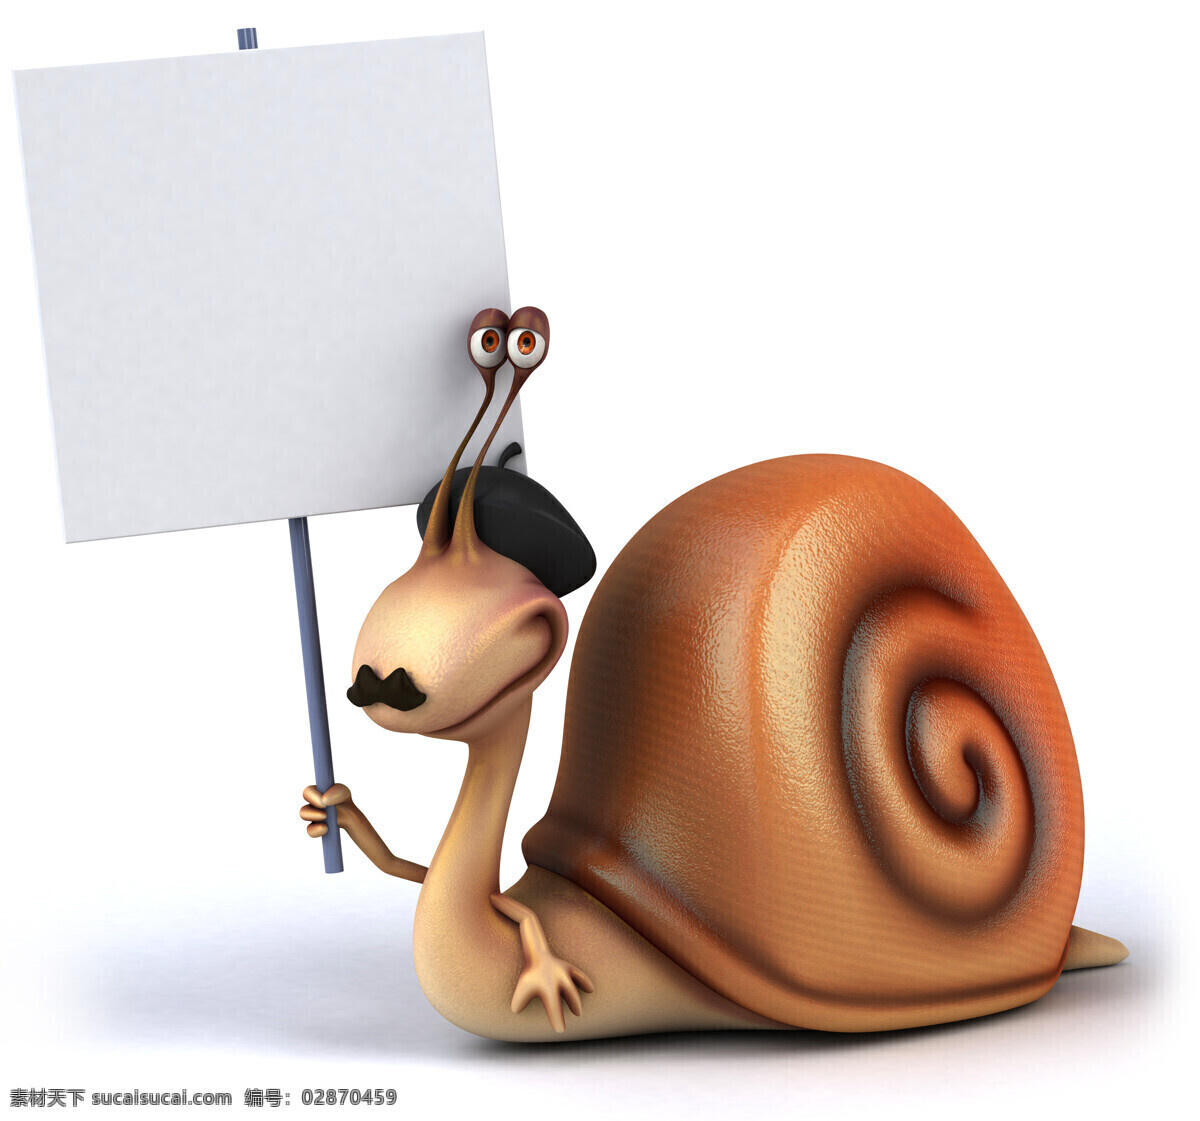 卡通 蜗牛 广告牌 卡通蜗牛 3d动物 卡通动物 生物世界